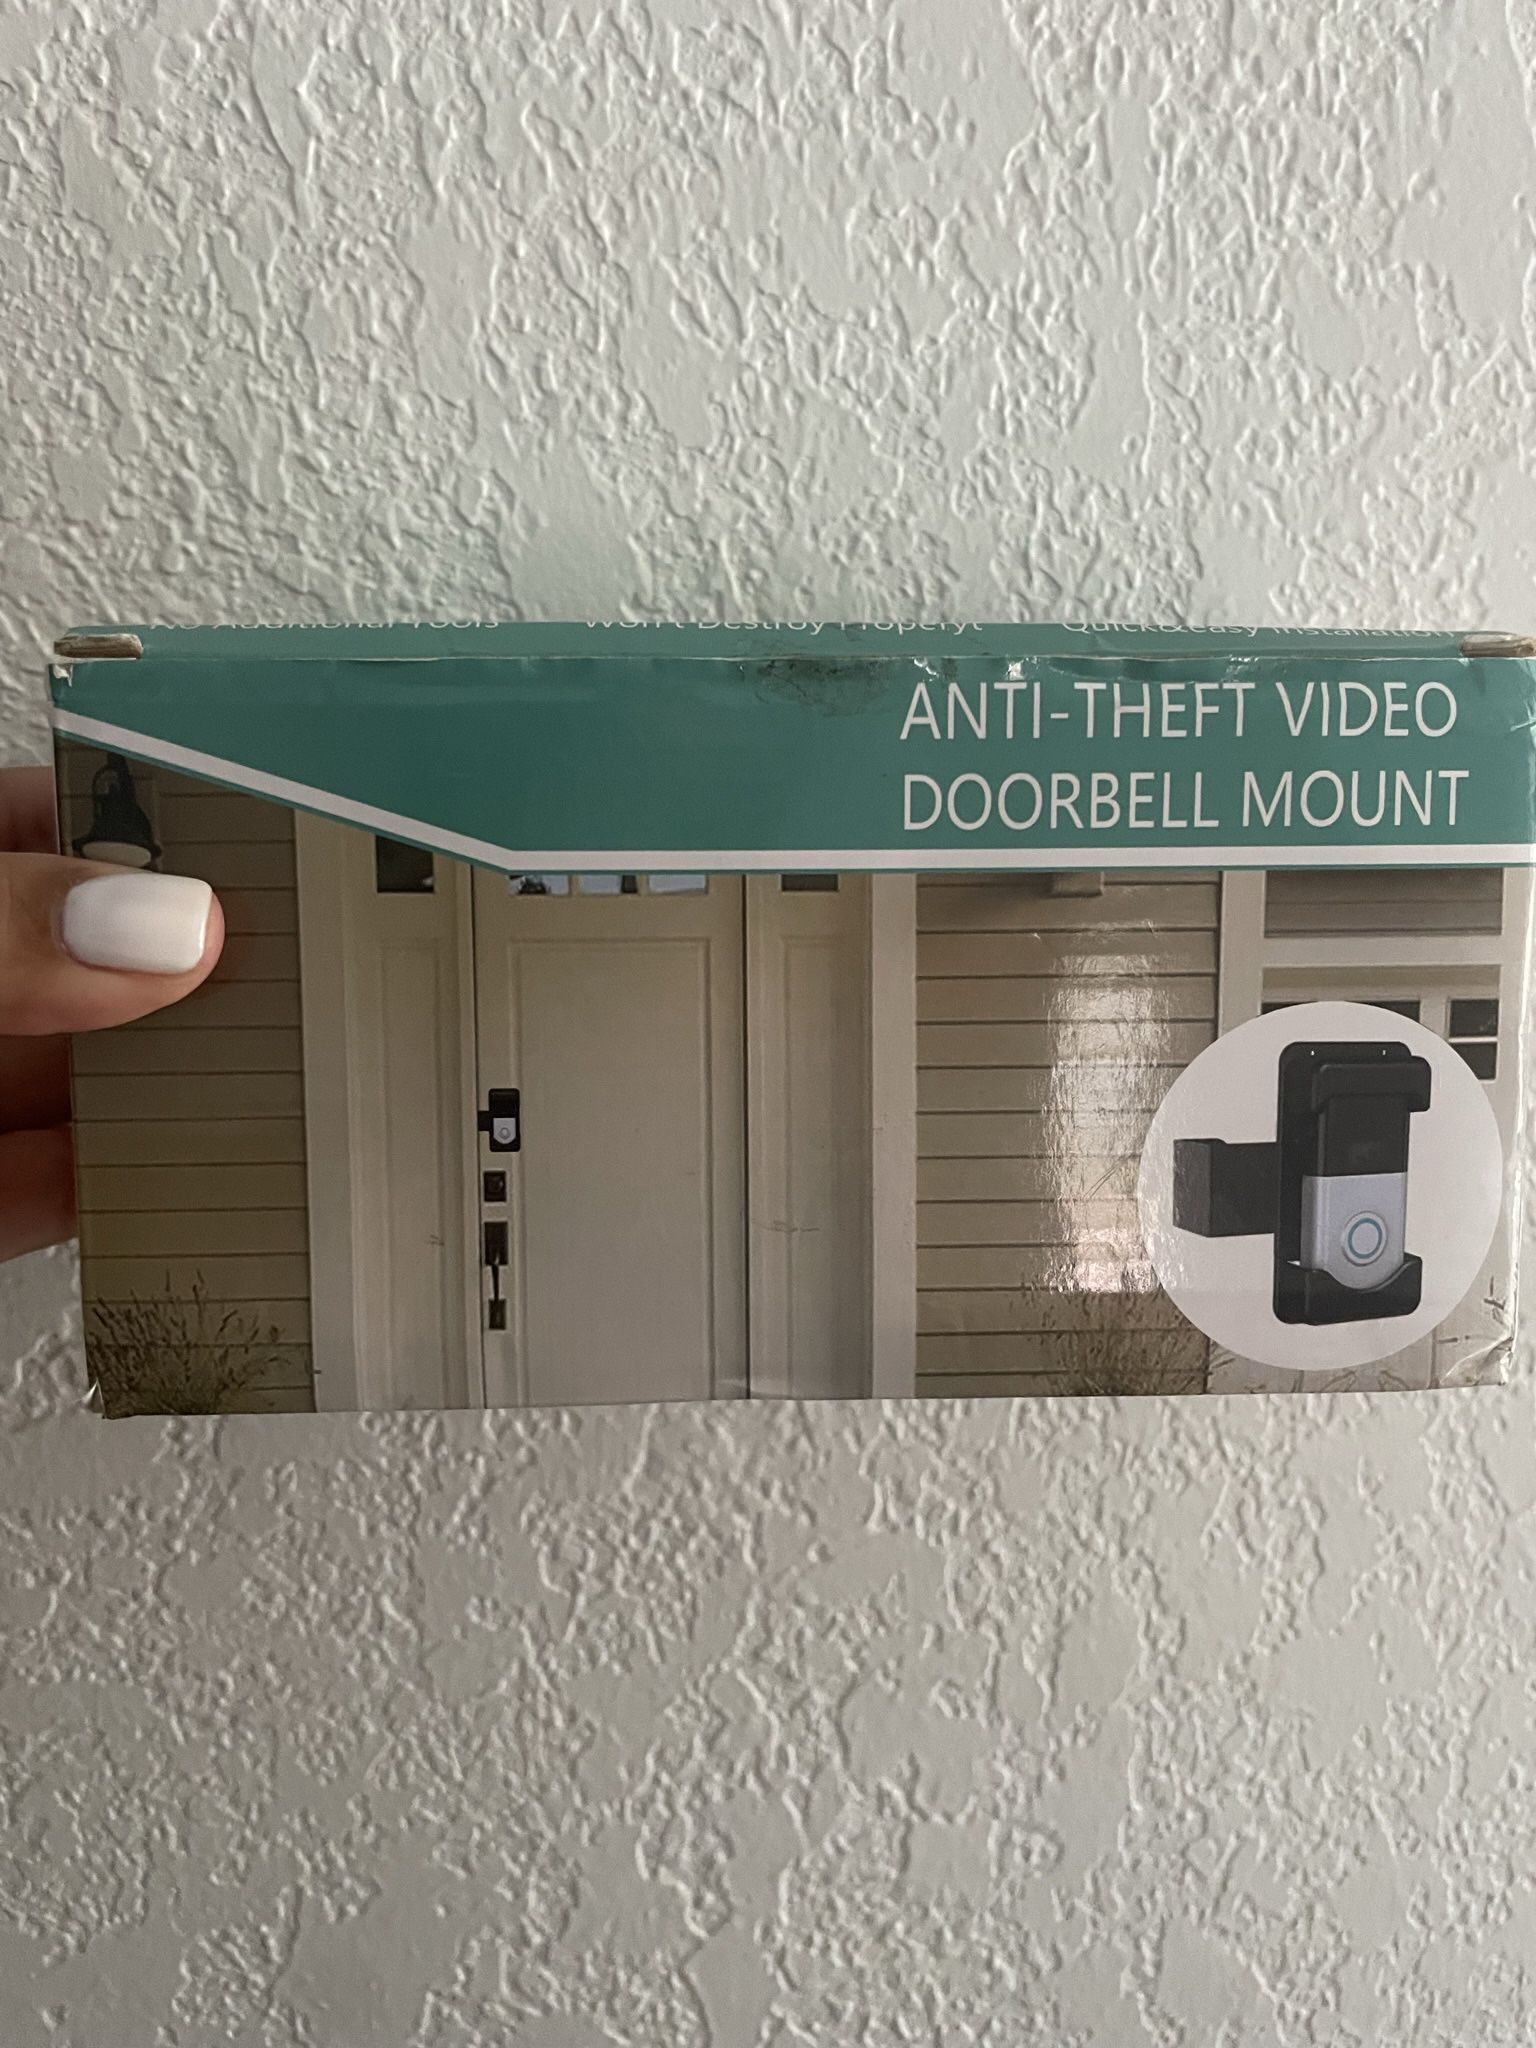 Anti-theft video Doorbell Mount